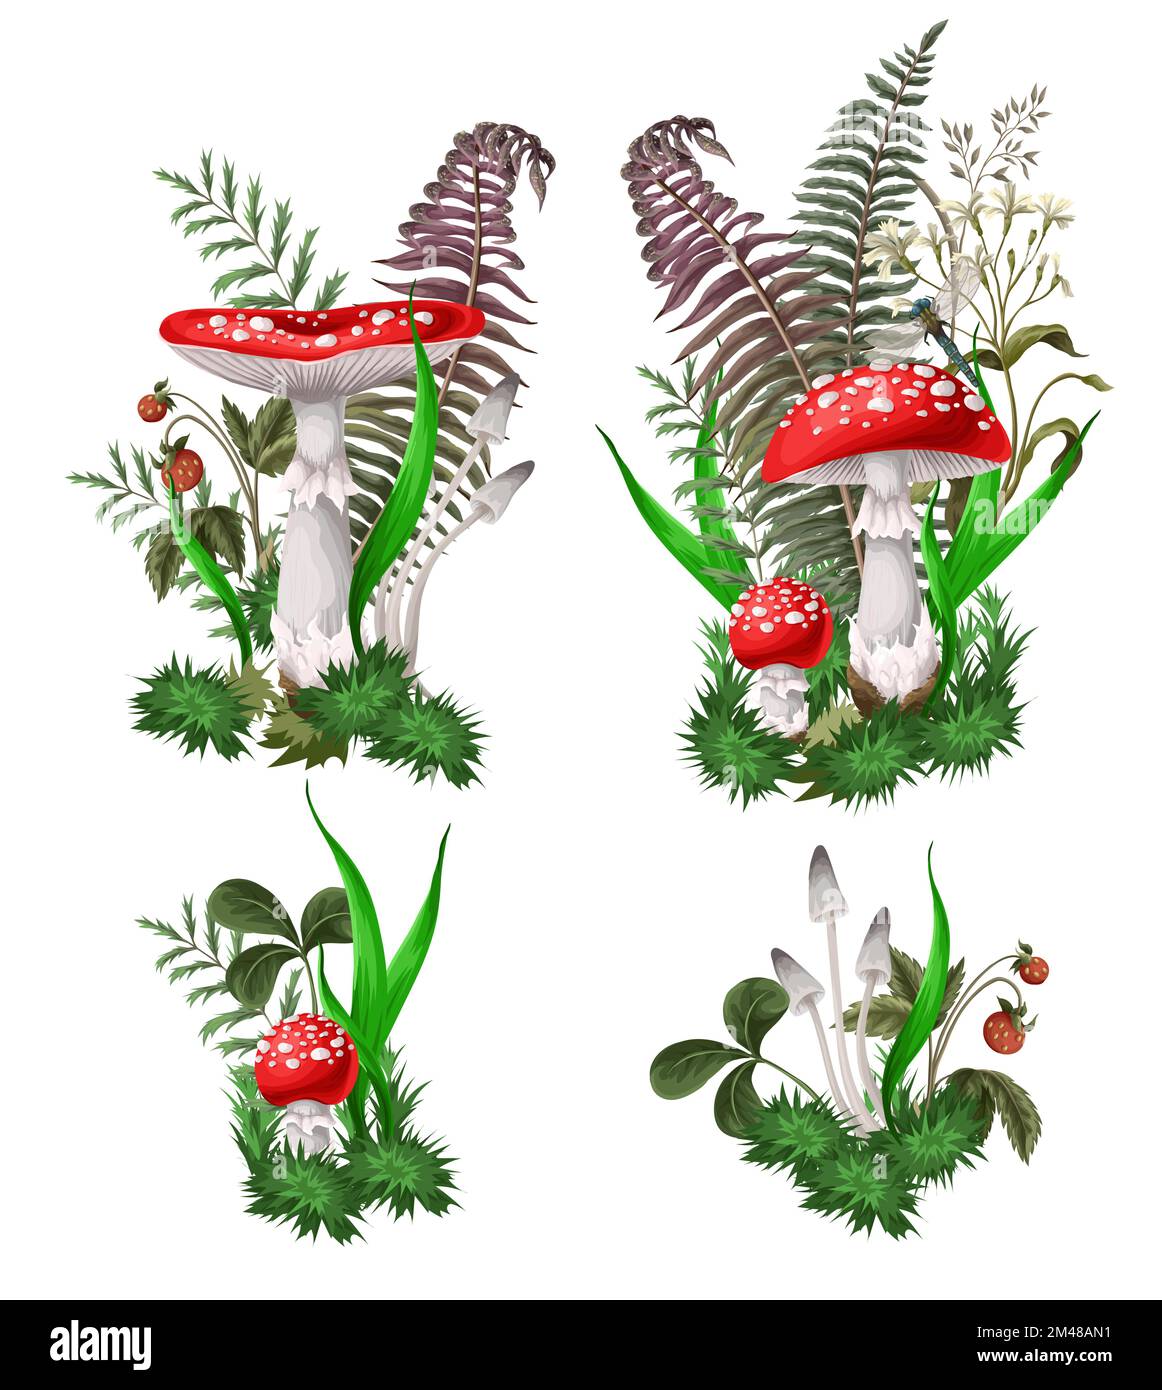 Composizioni con Fly agarics, funghi, e piante isolate. Vettore. Illustrazione Vettoriale